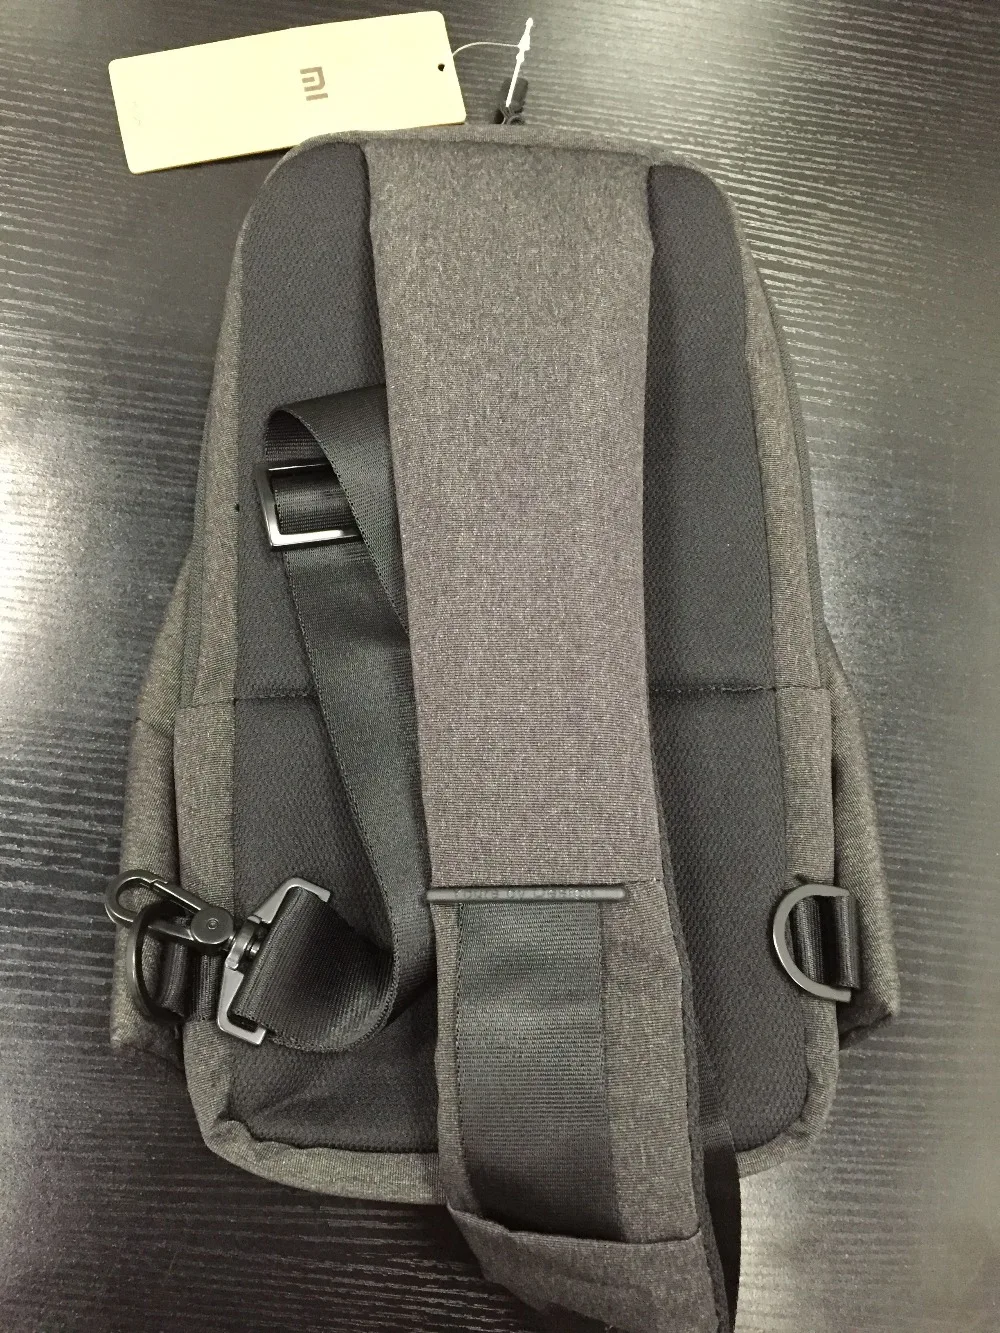 Оригинальная Xiaomi mi сумка на плечо, простая нагрудная сумка для мужчин, Женская Повседневная сумка mi ni, модный рюкзак для камеры, телефона